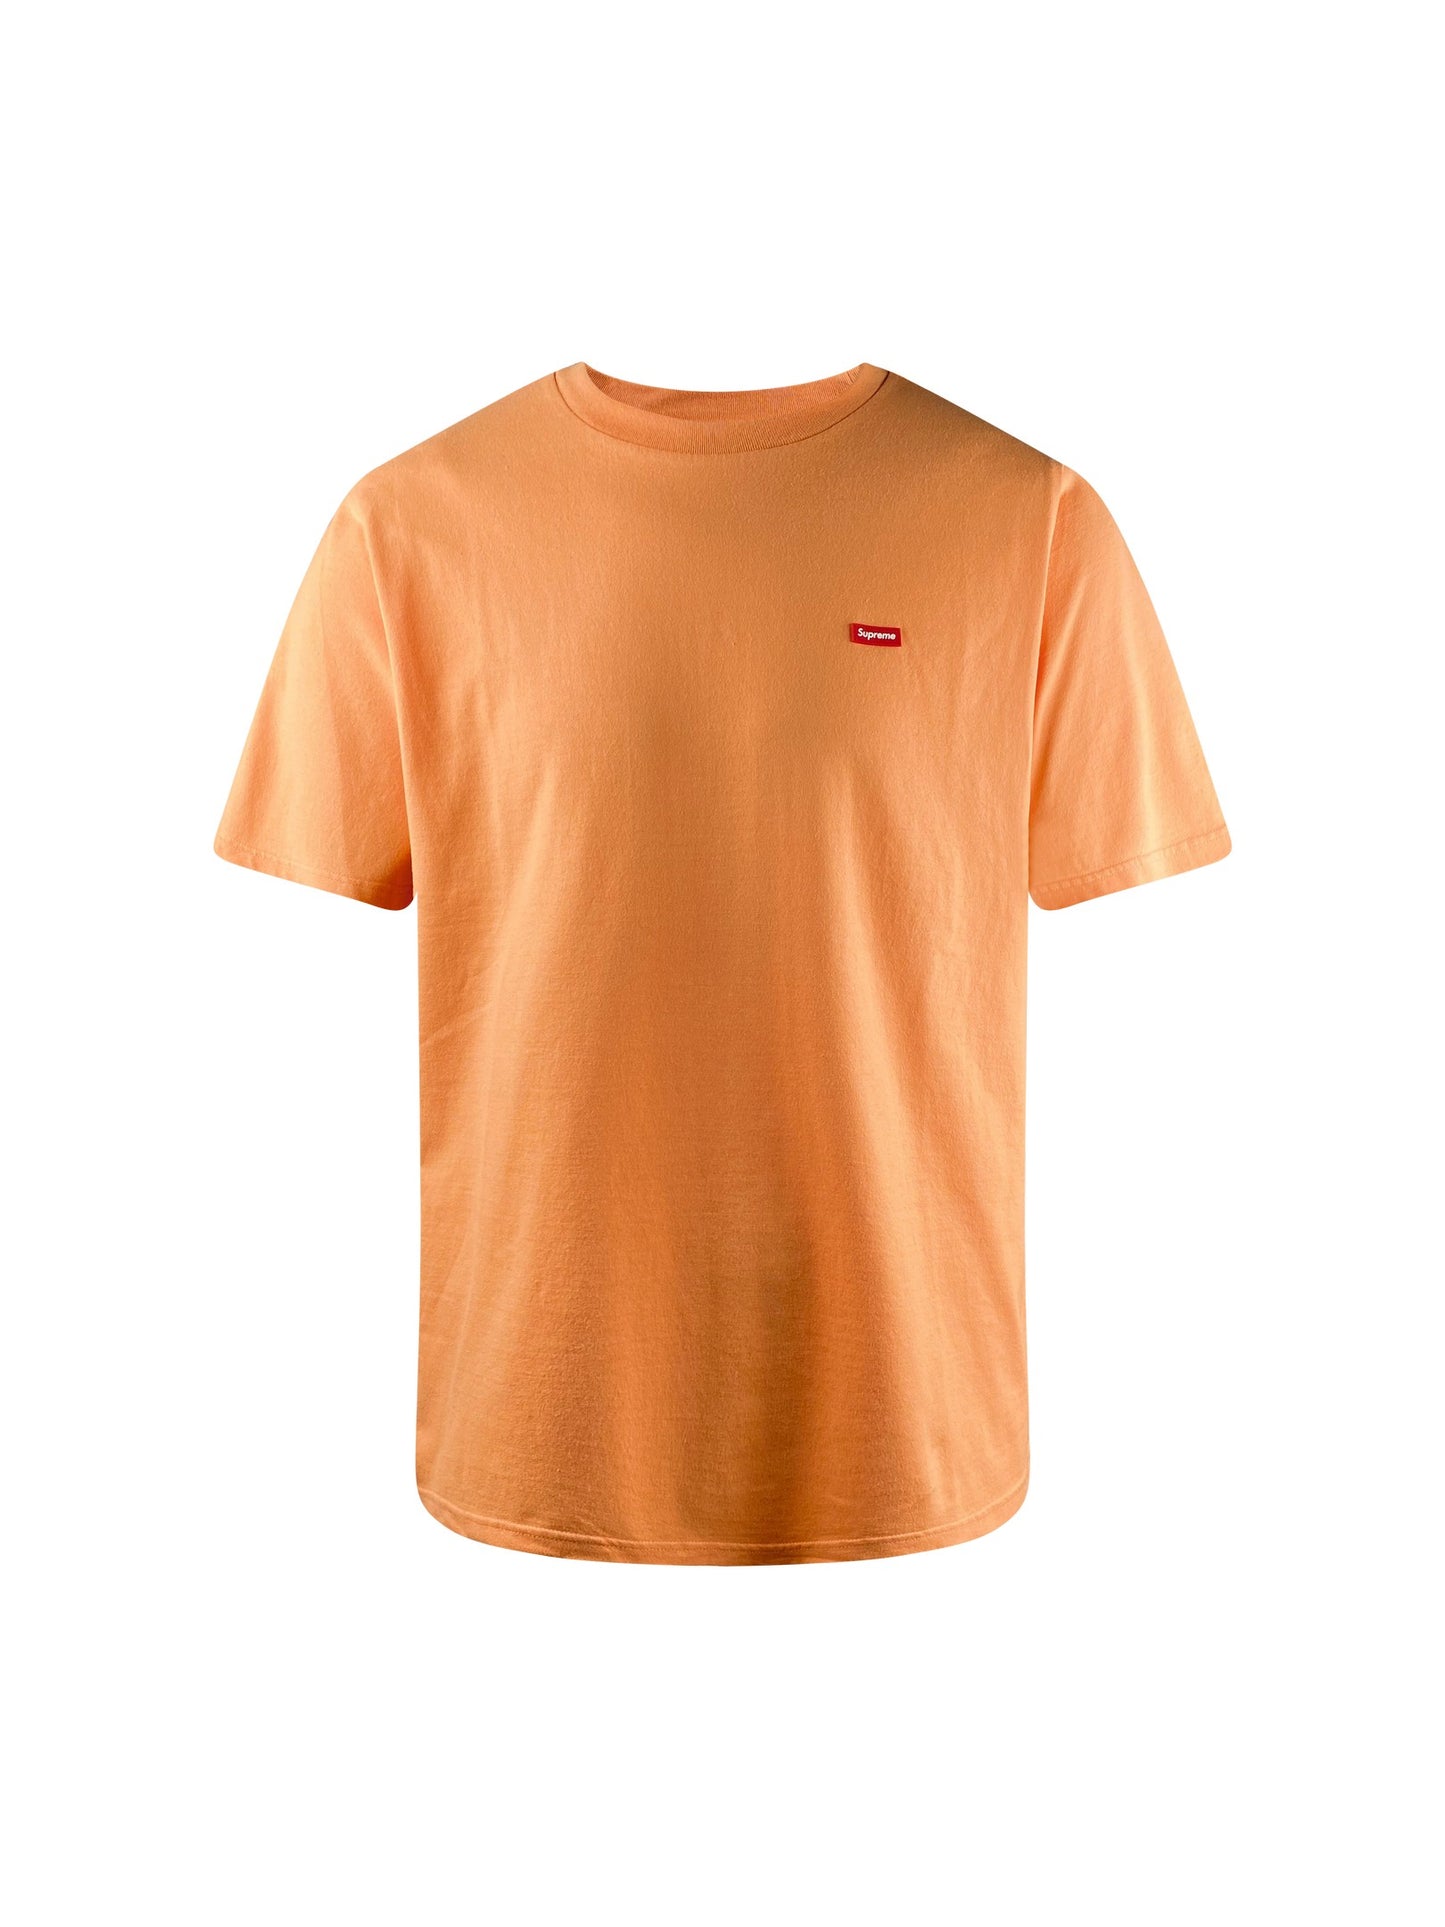 Supreme T-Shirt “Sailboat Tee” -coral